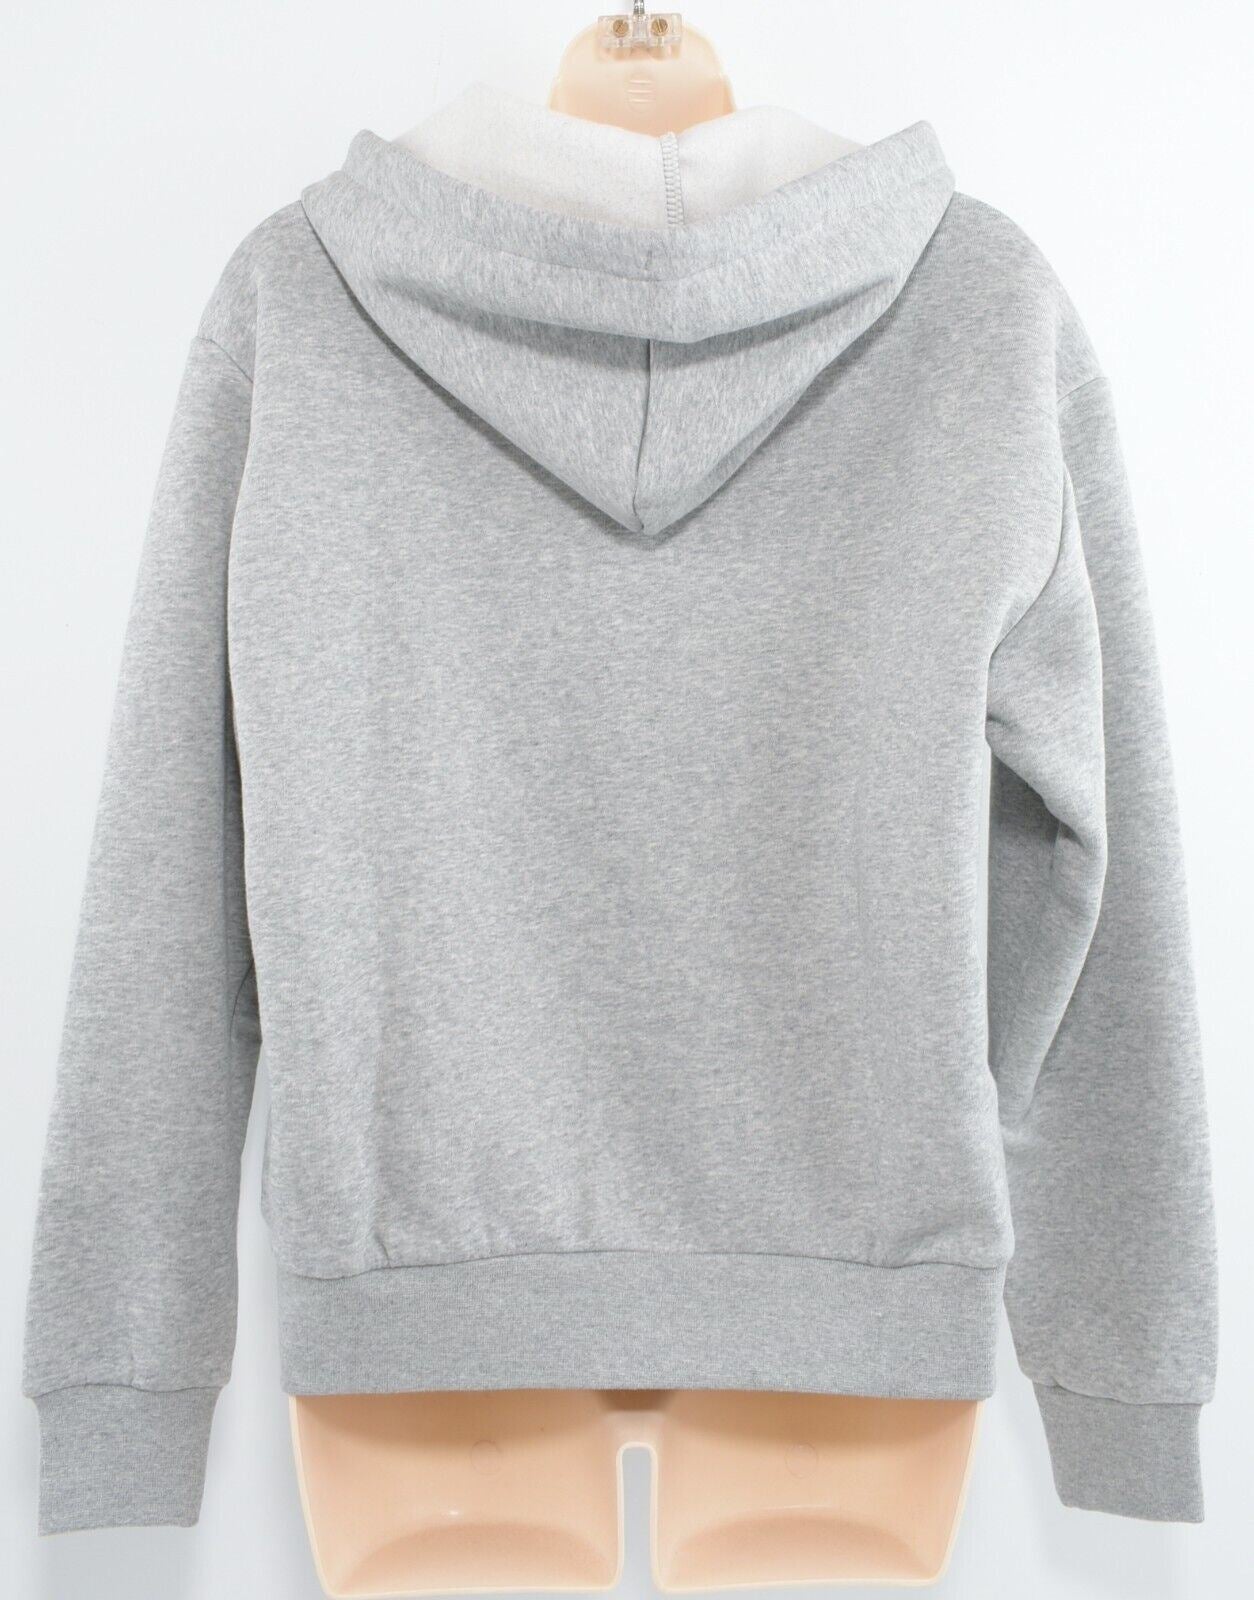 CONVERSE Women's NOVA Zip Hoodie Jacket, Grey Heather, size S (UK 10)